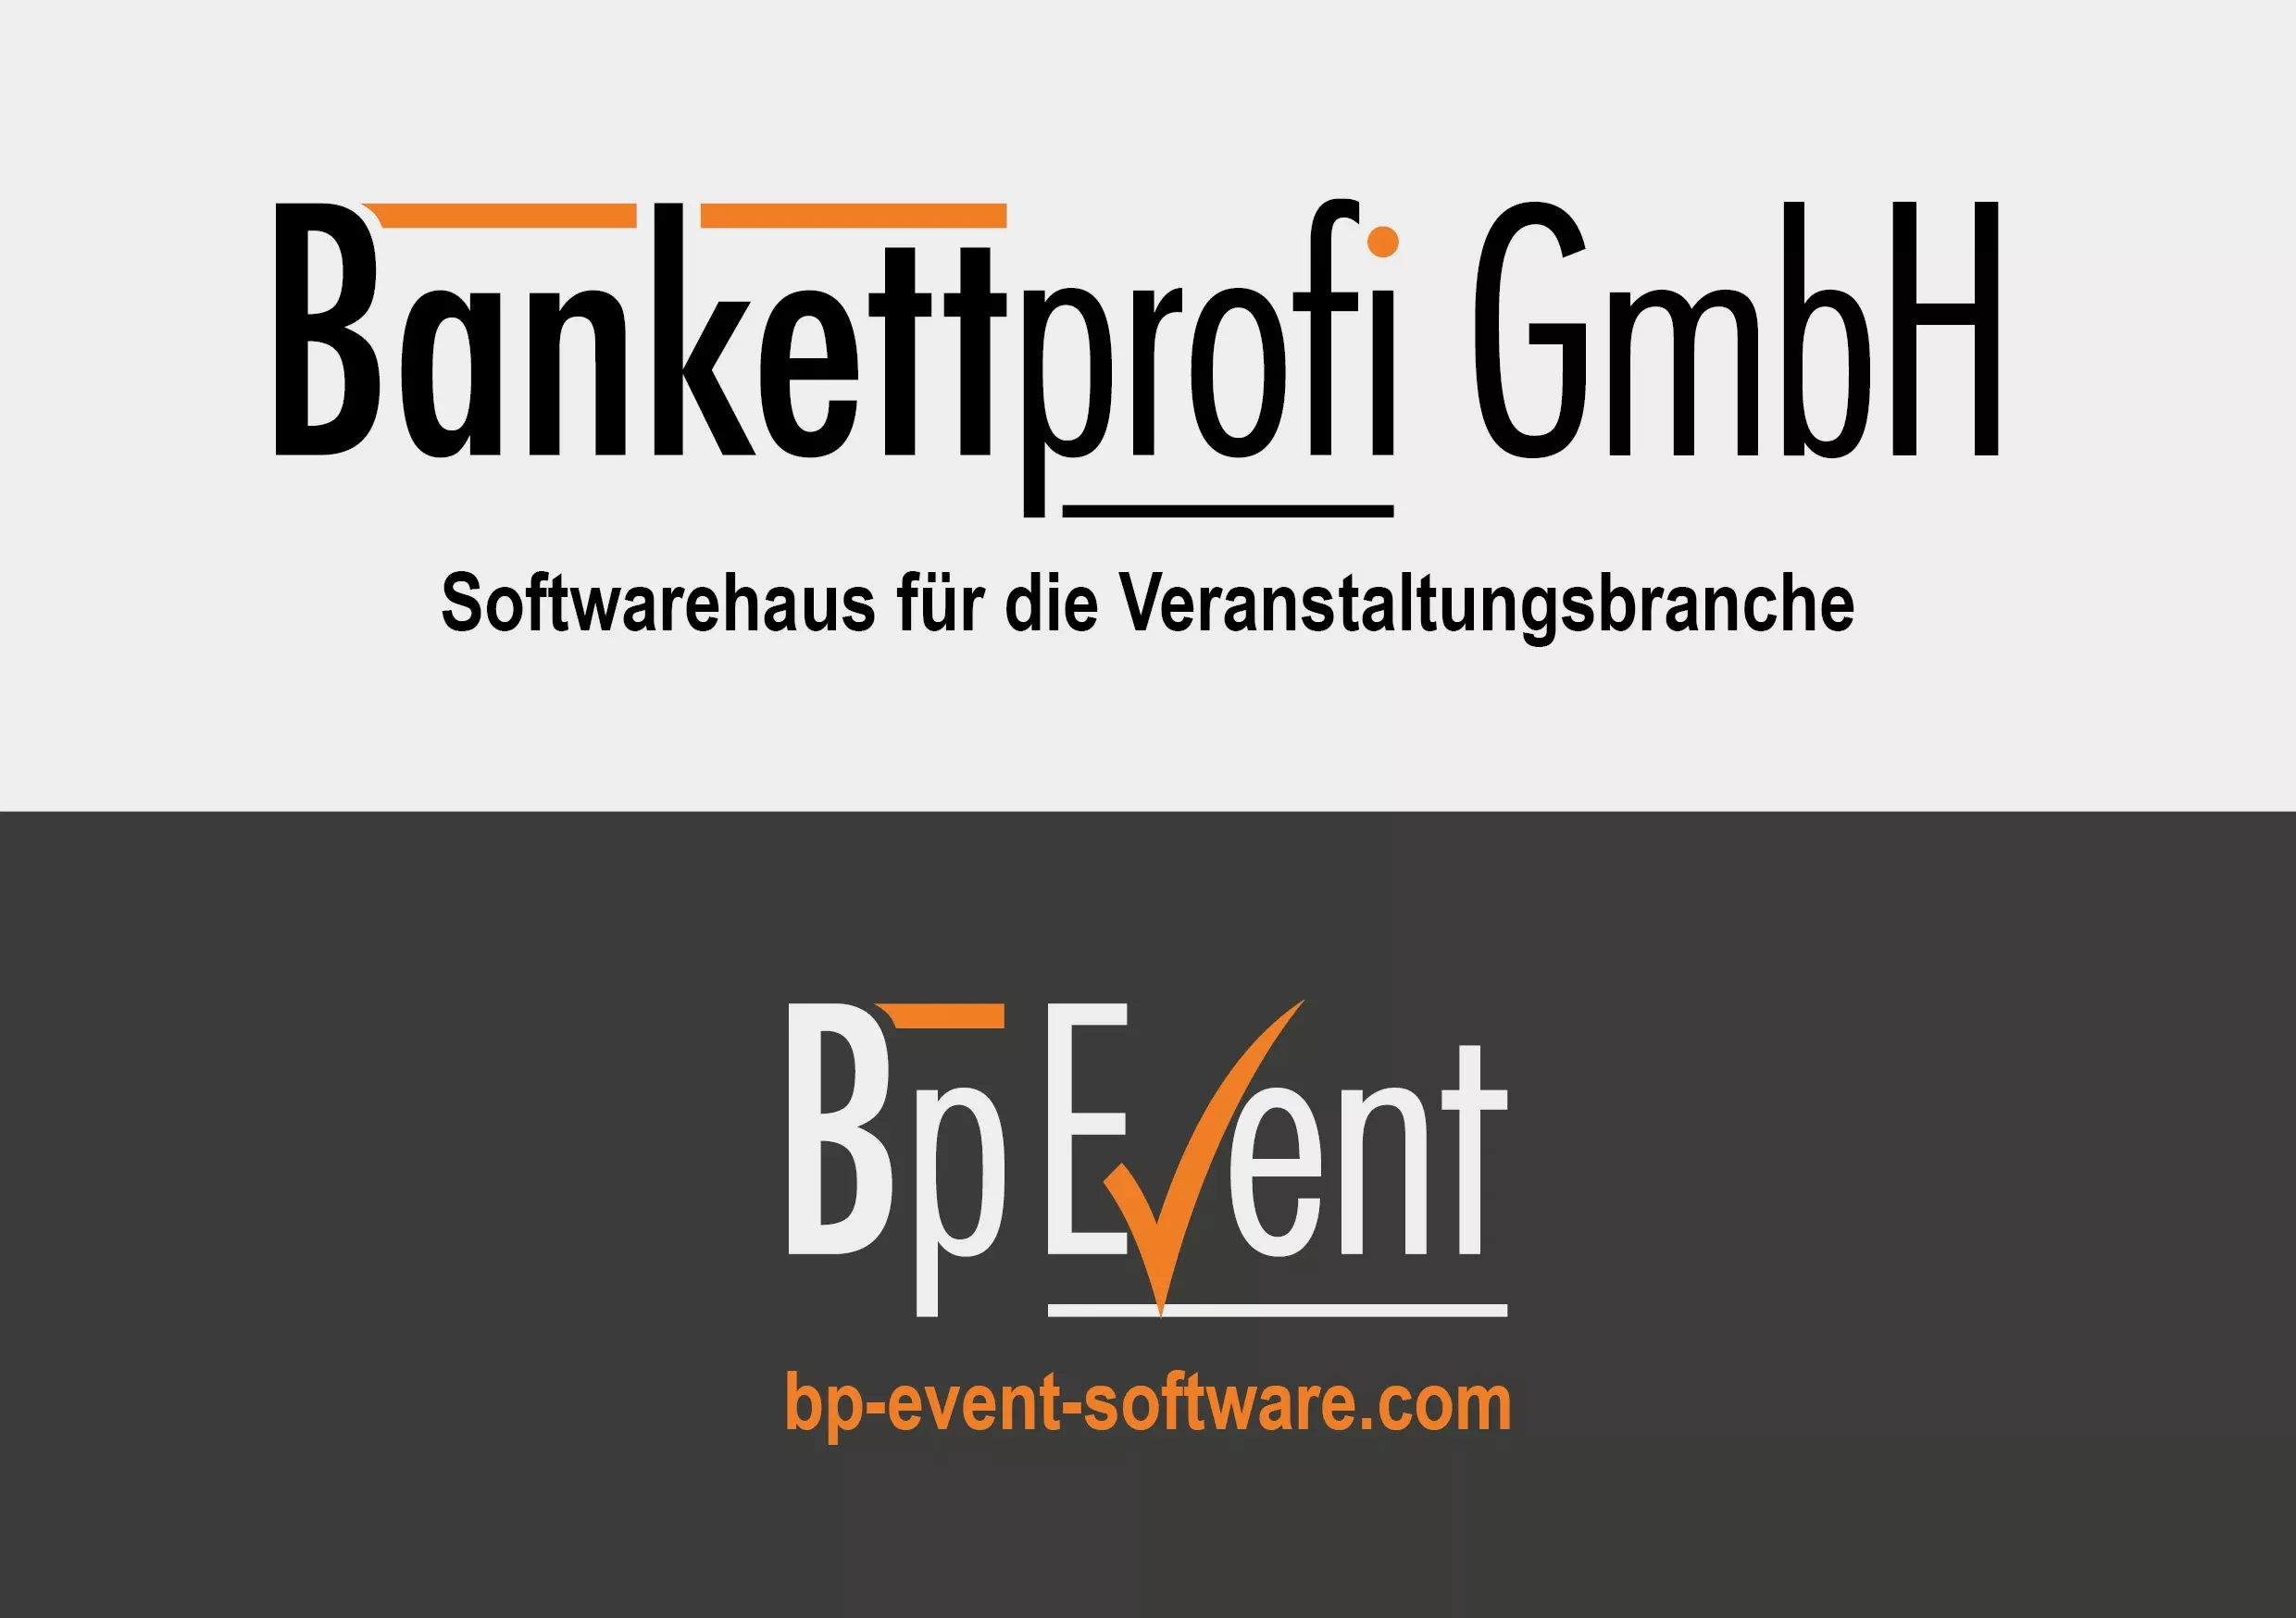 Imagebroschüre der Bankettprofi GmbH